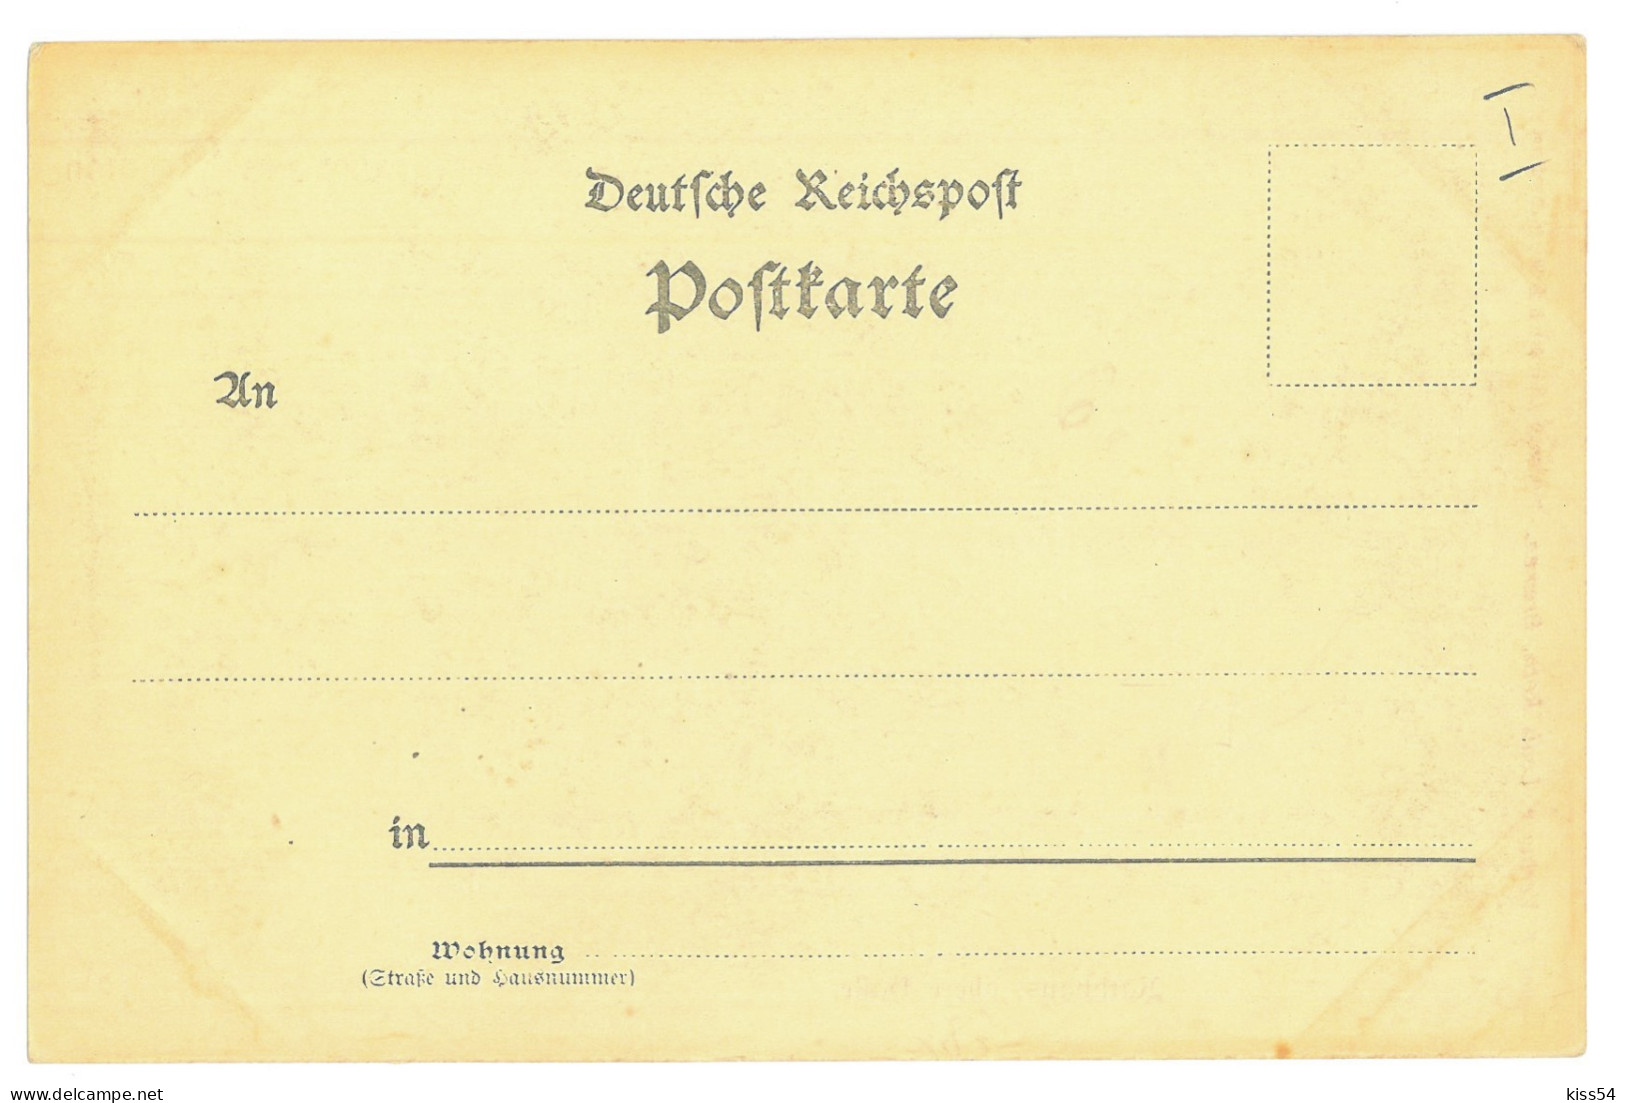 GER 25 - 16861 BREMEN, Litho, Germany - Old Postcard - Unused - Bremen